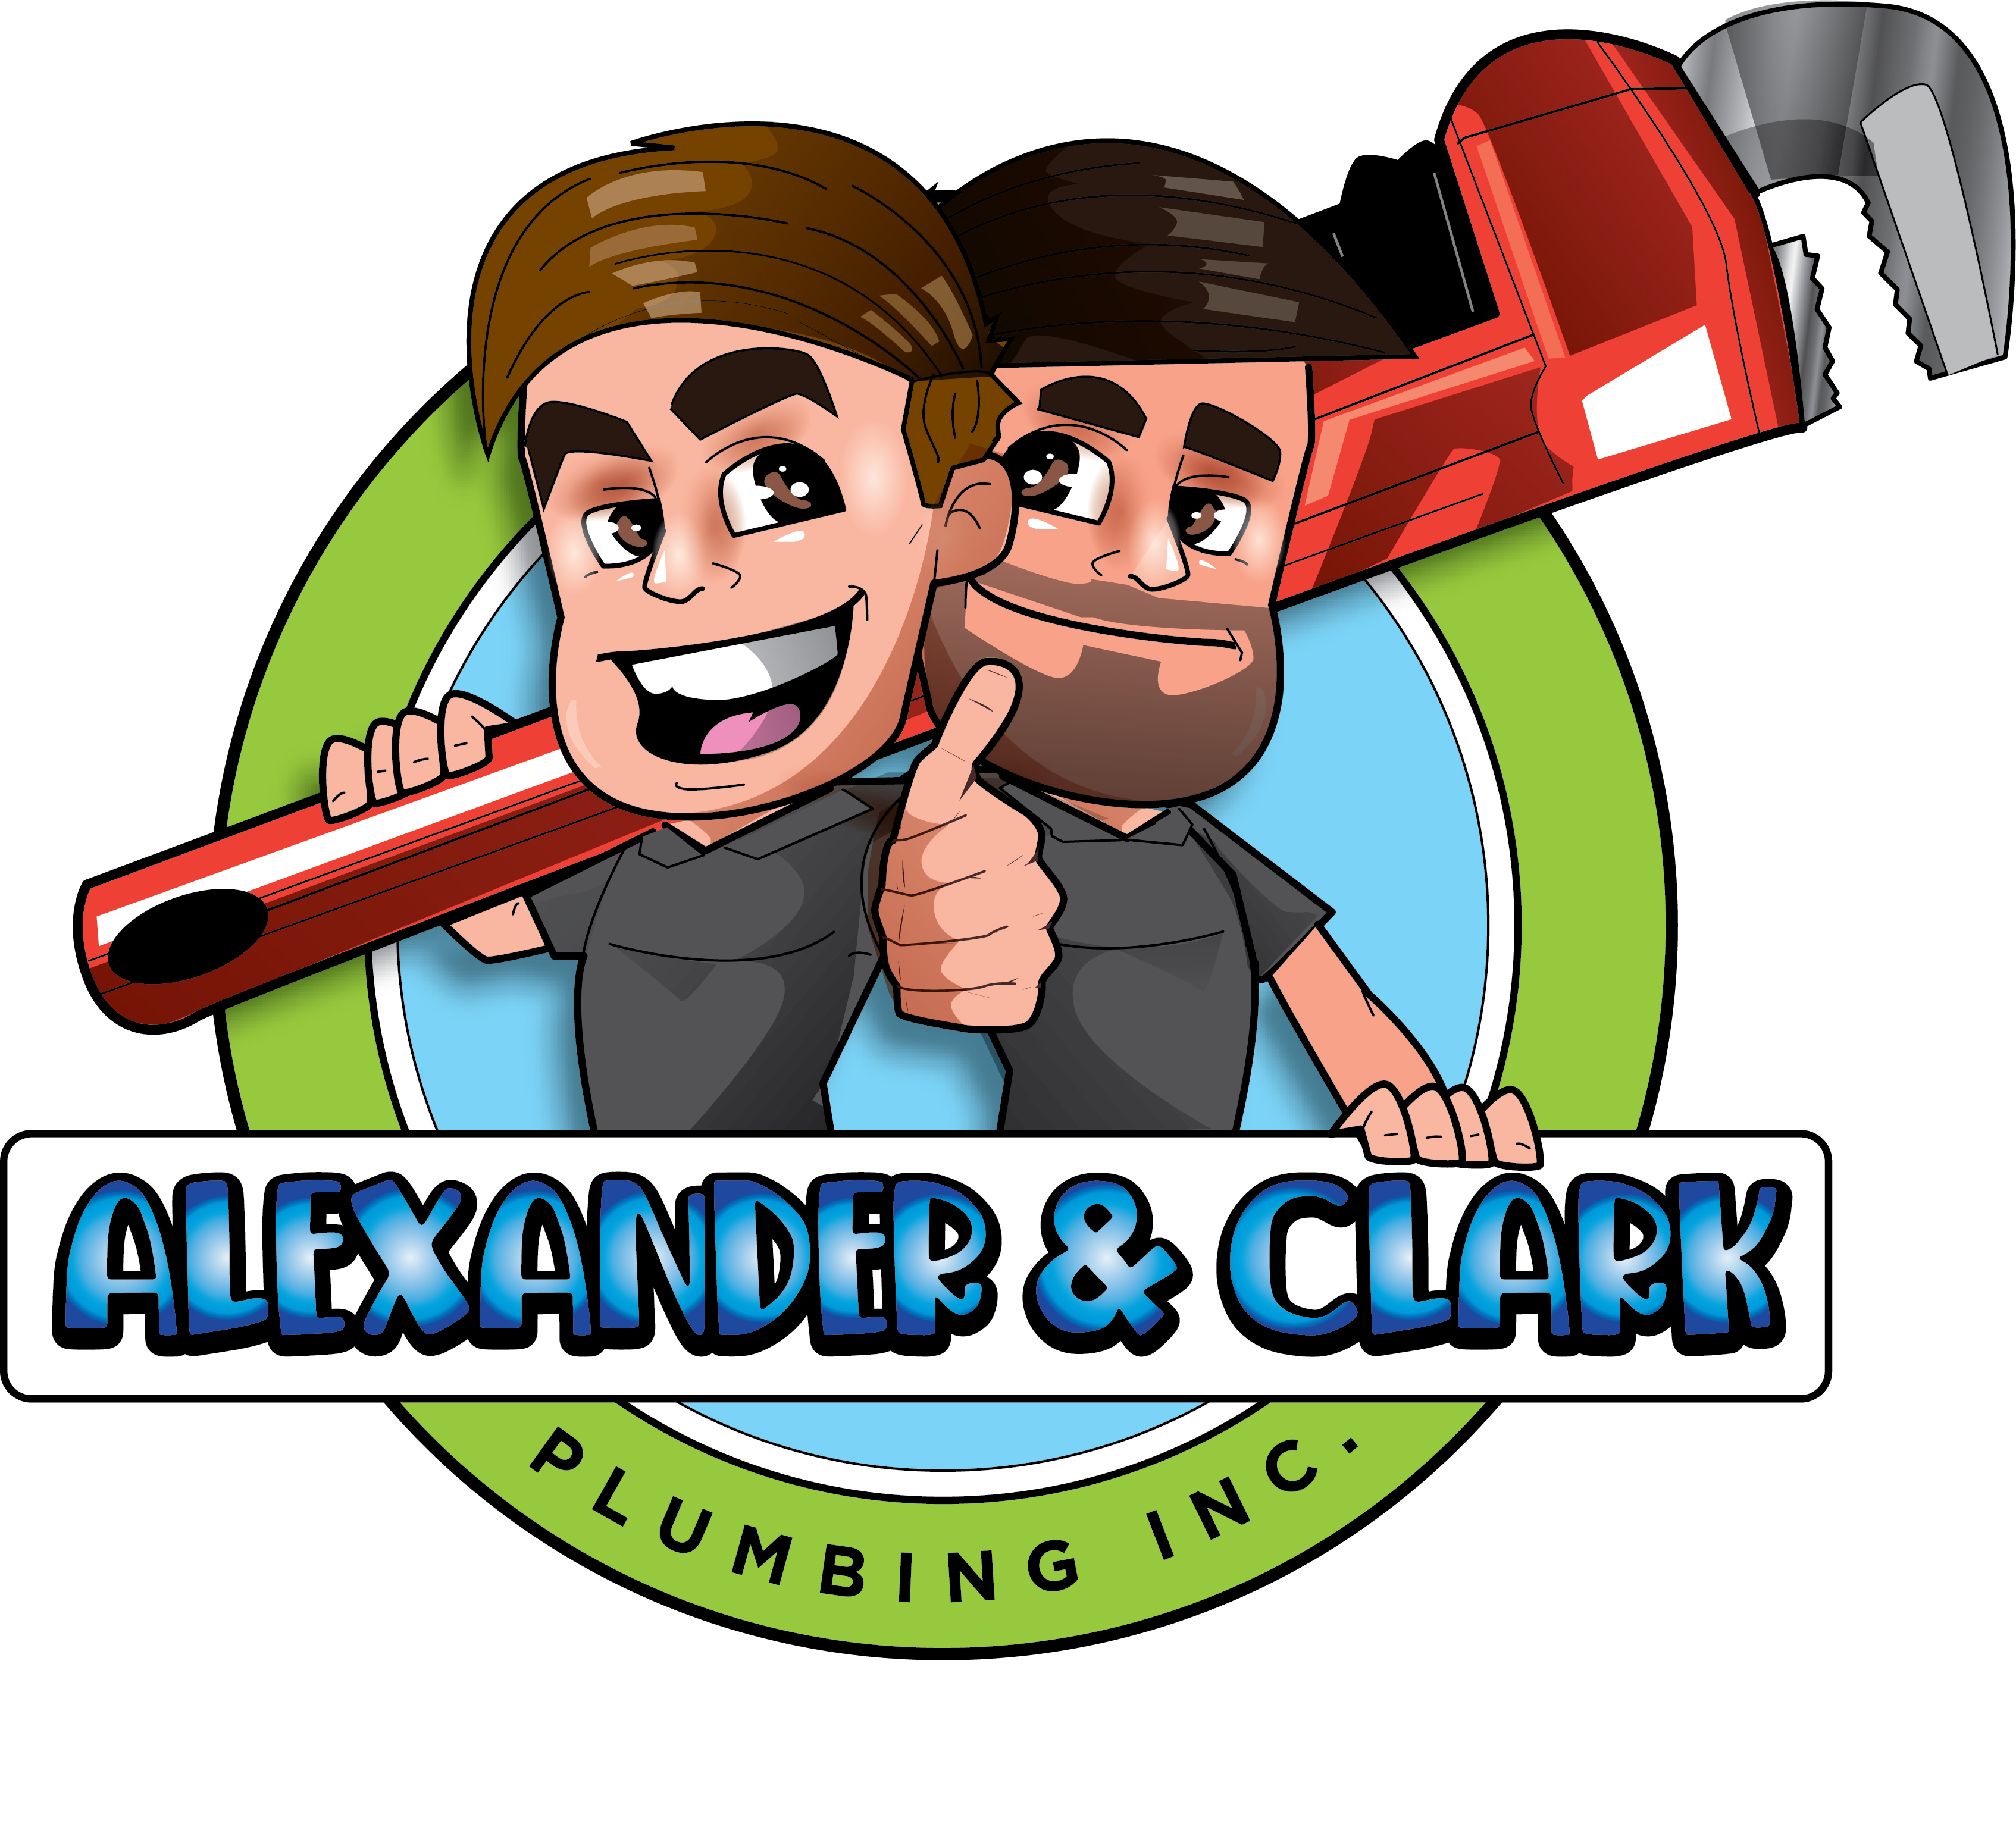 Alexander & Clark Plumbing, Inc. Logo